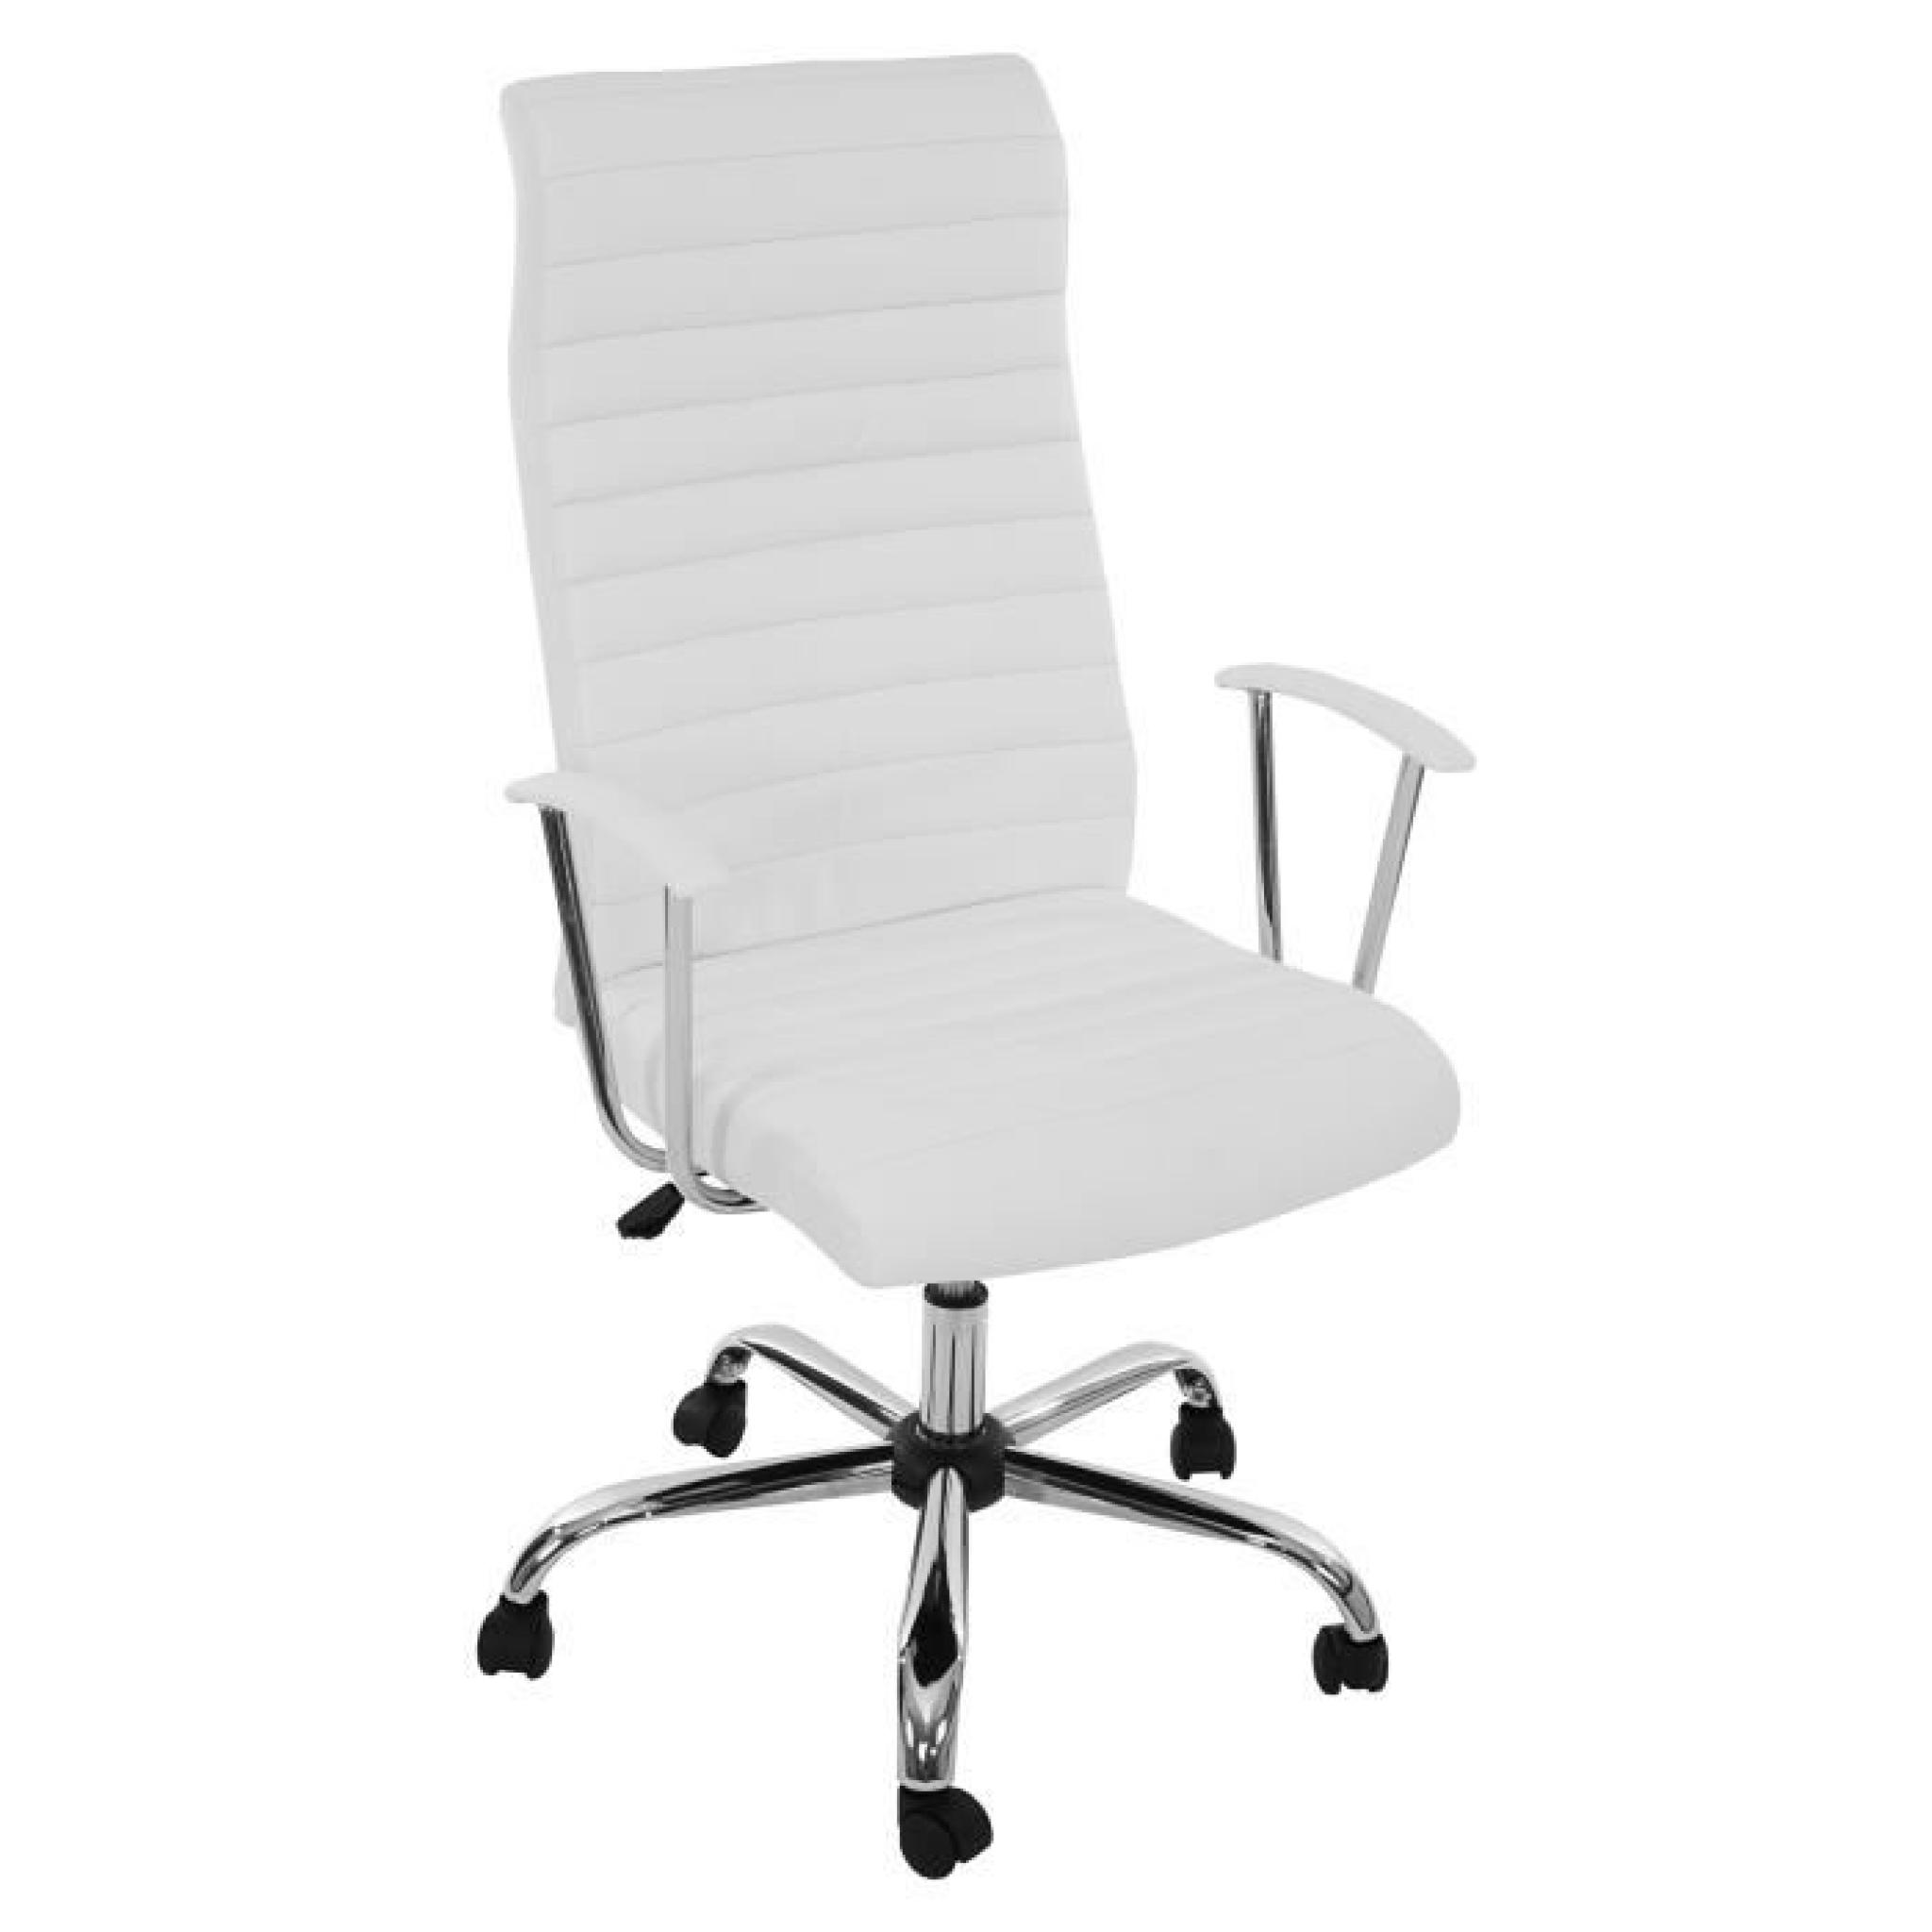  Chaise de bureau pivotant et inclinable , forme ergonomique ~ Blanc